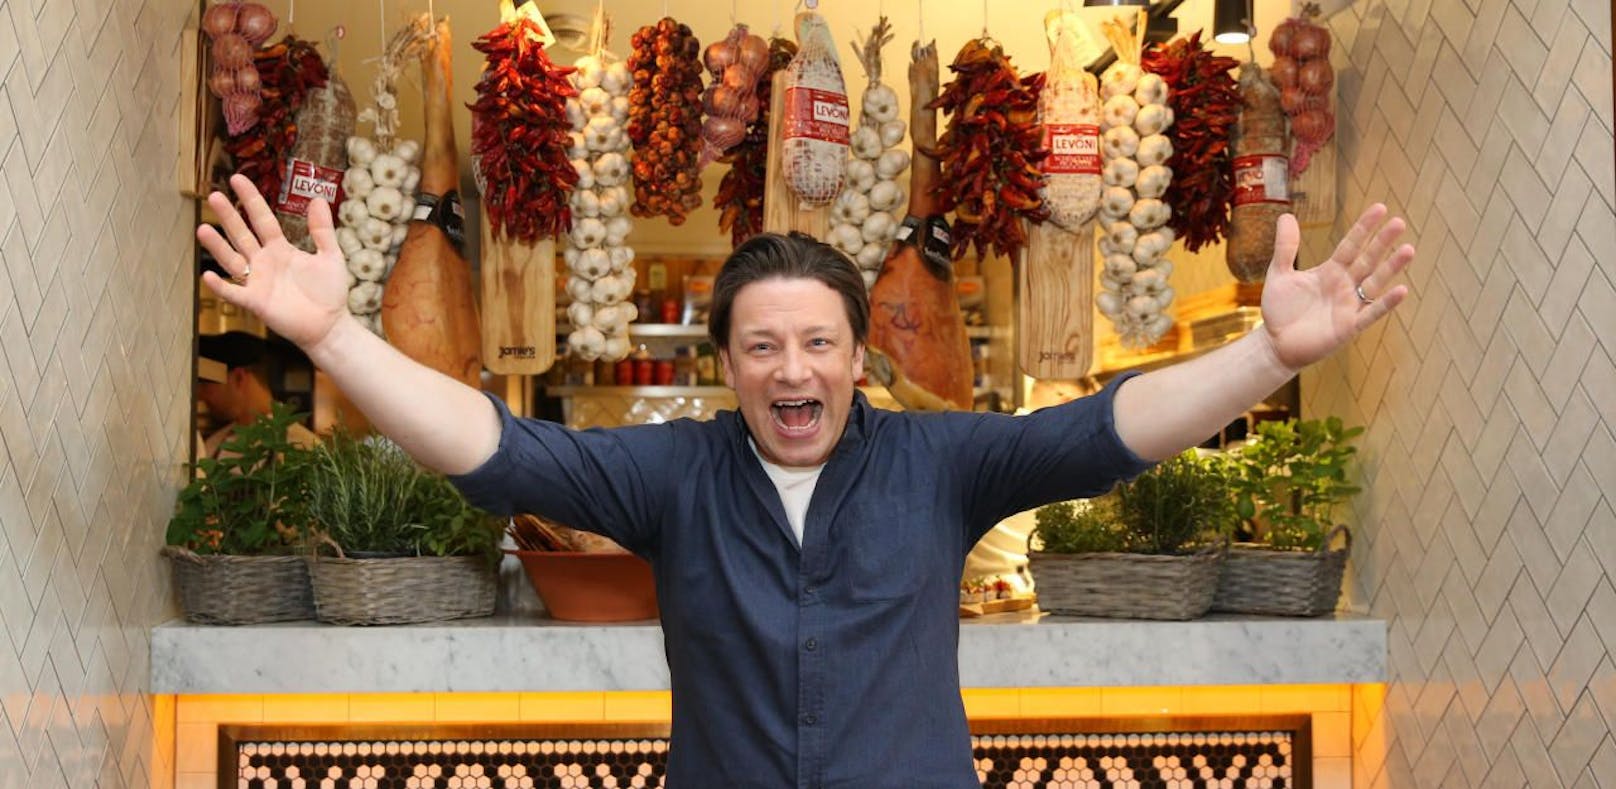 Jamie Oliver: Zu seinem Schnitzel kam er nicht